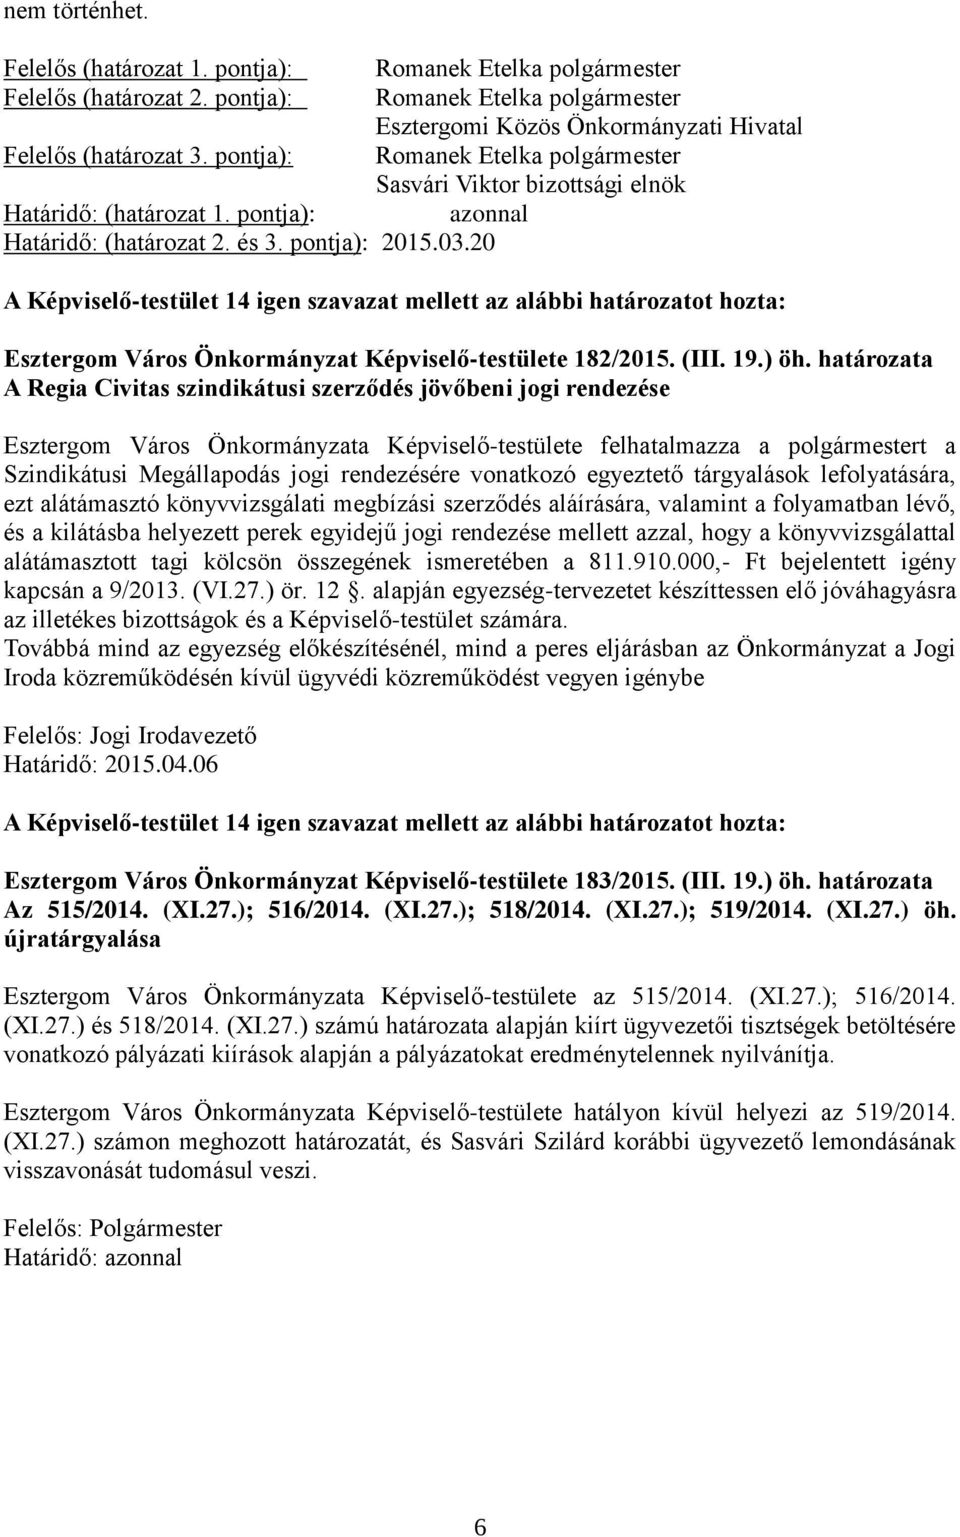 20 A Képviselő-testület 14 igen szavazat mellett az alábbi határozatot hozta: Esztergom Város Önkormányzat Képviselő-testülete 182/2015. (III. 19.) öh.